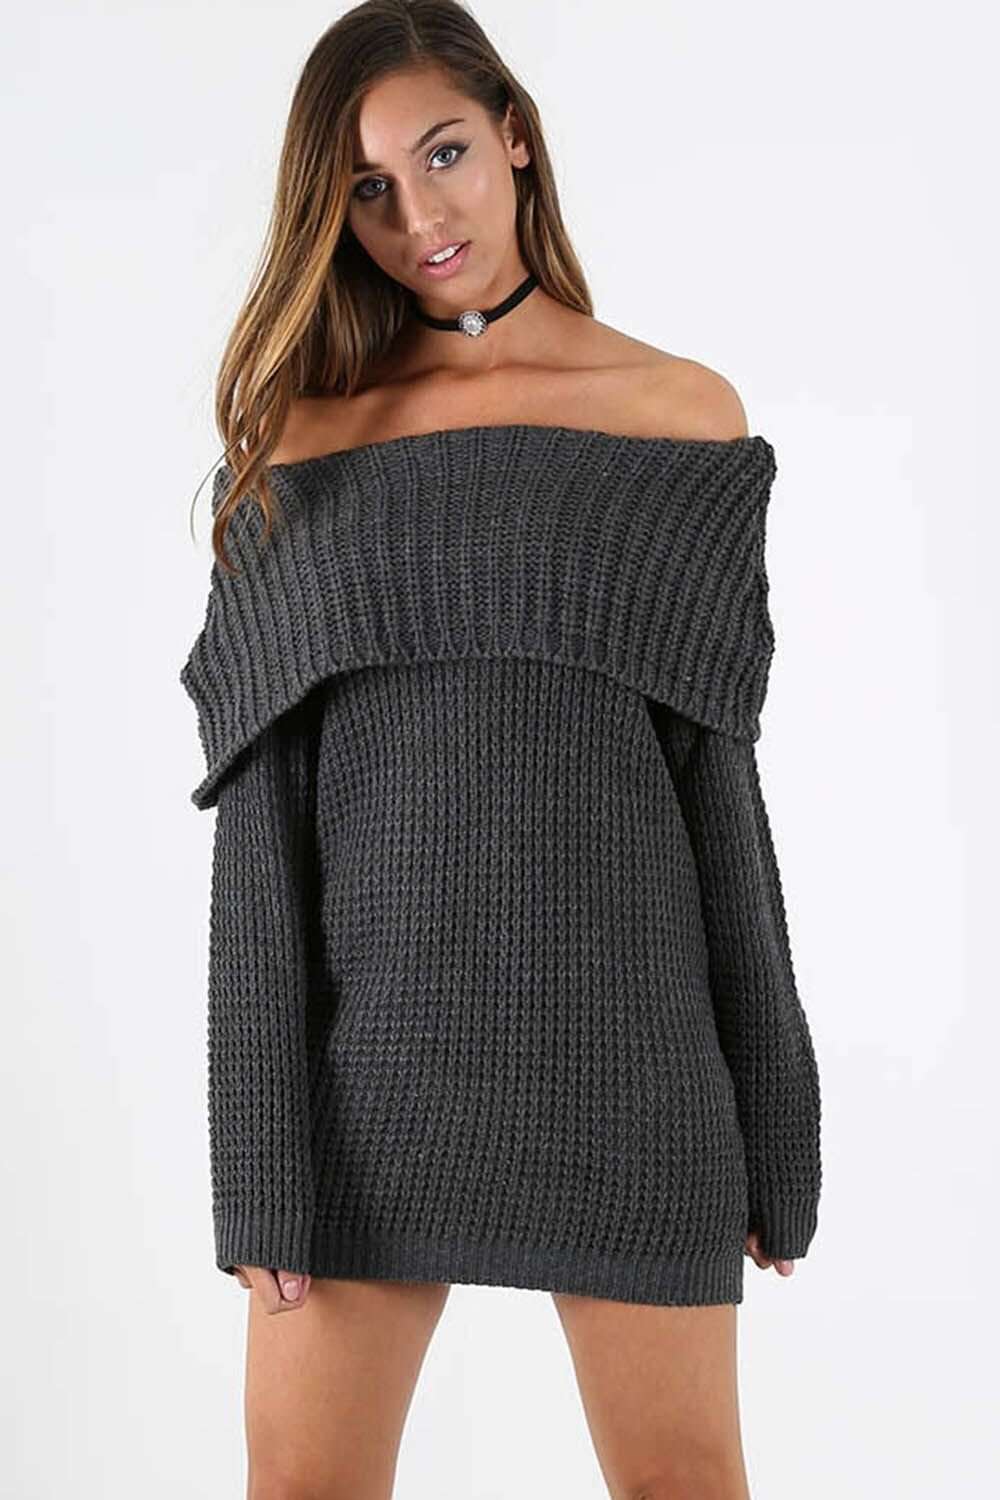 Sallie Off Shoulder Oversized Knitted Jumper Dress - bejealous-com